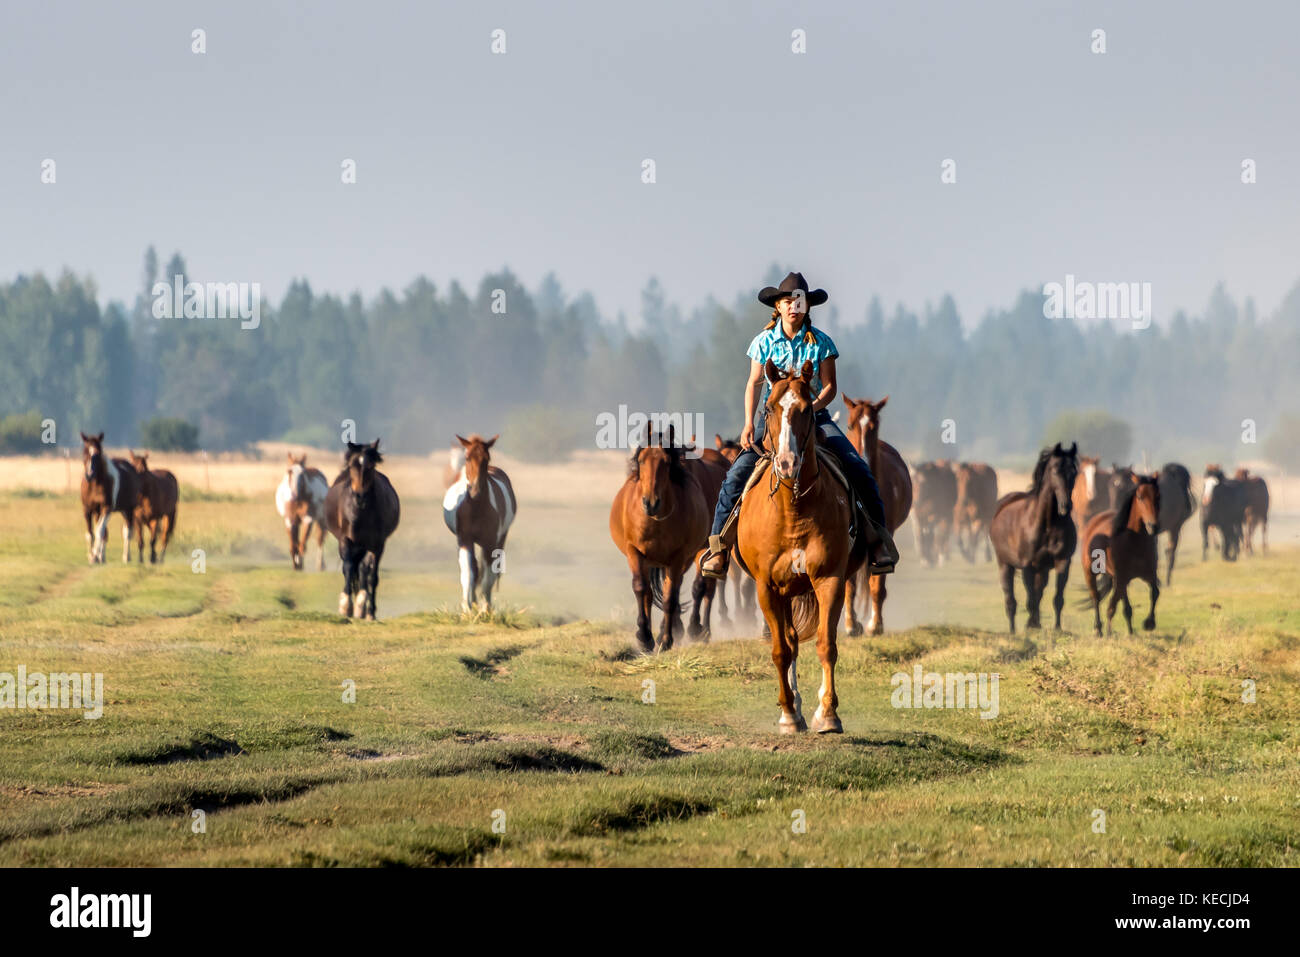 Un cowgirl in un cappello da cowboy a cavallo conduce un allevamento di cavalli in un prato di erba nella luce del mattino nella parte occidentale degli Stati Uniti. Foto Stock